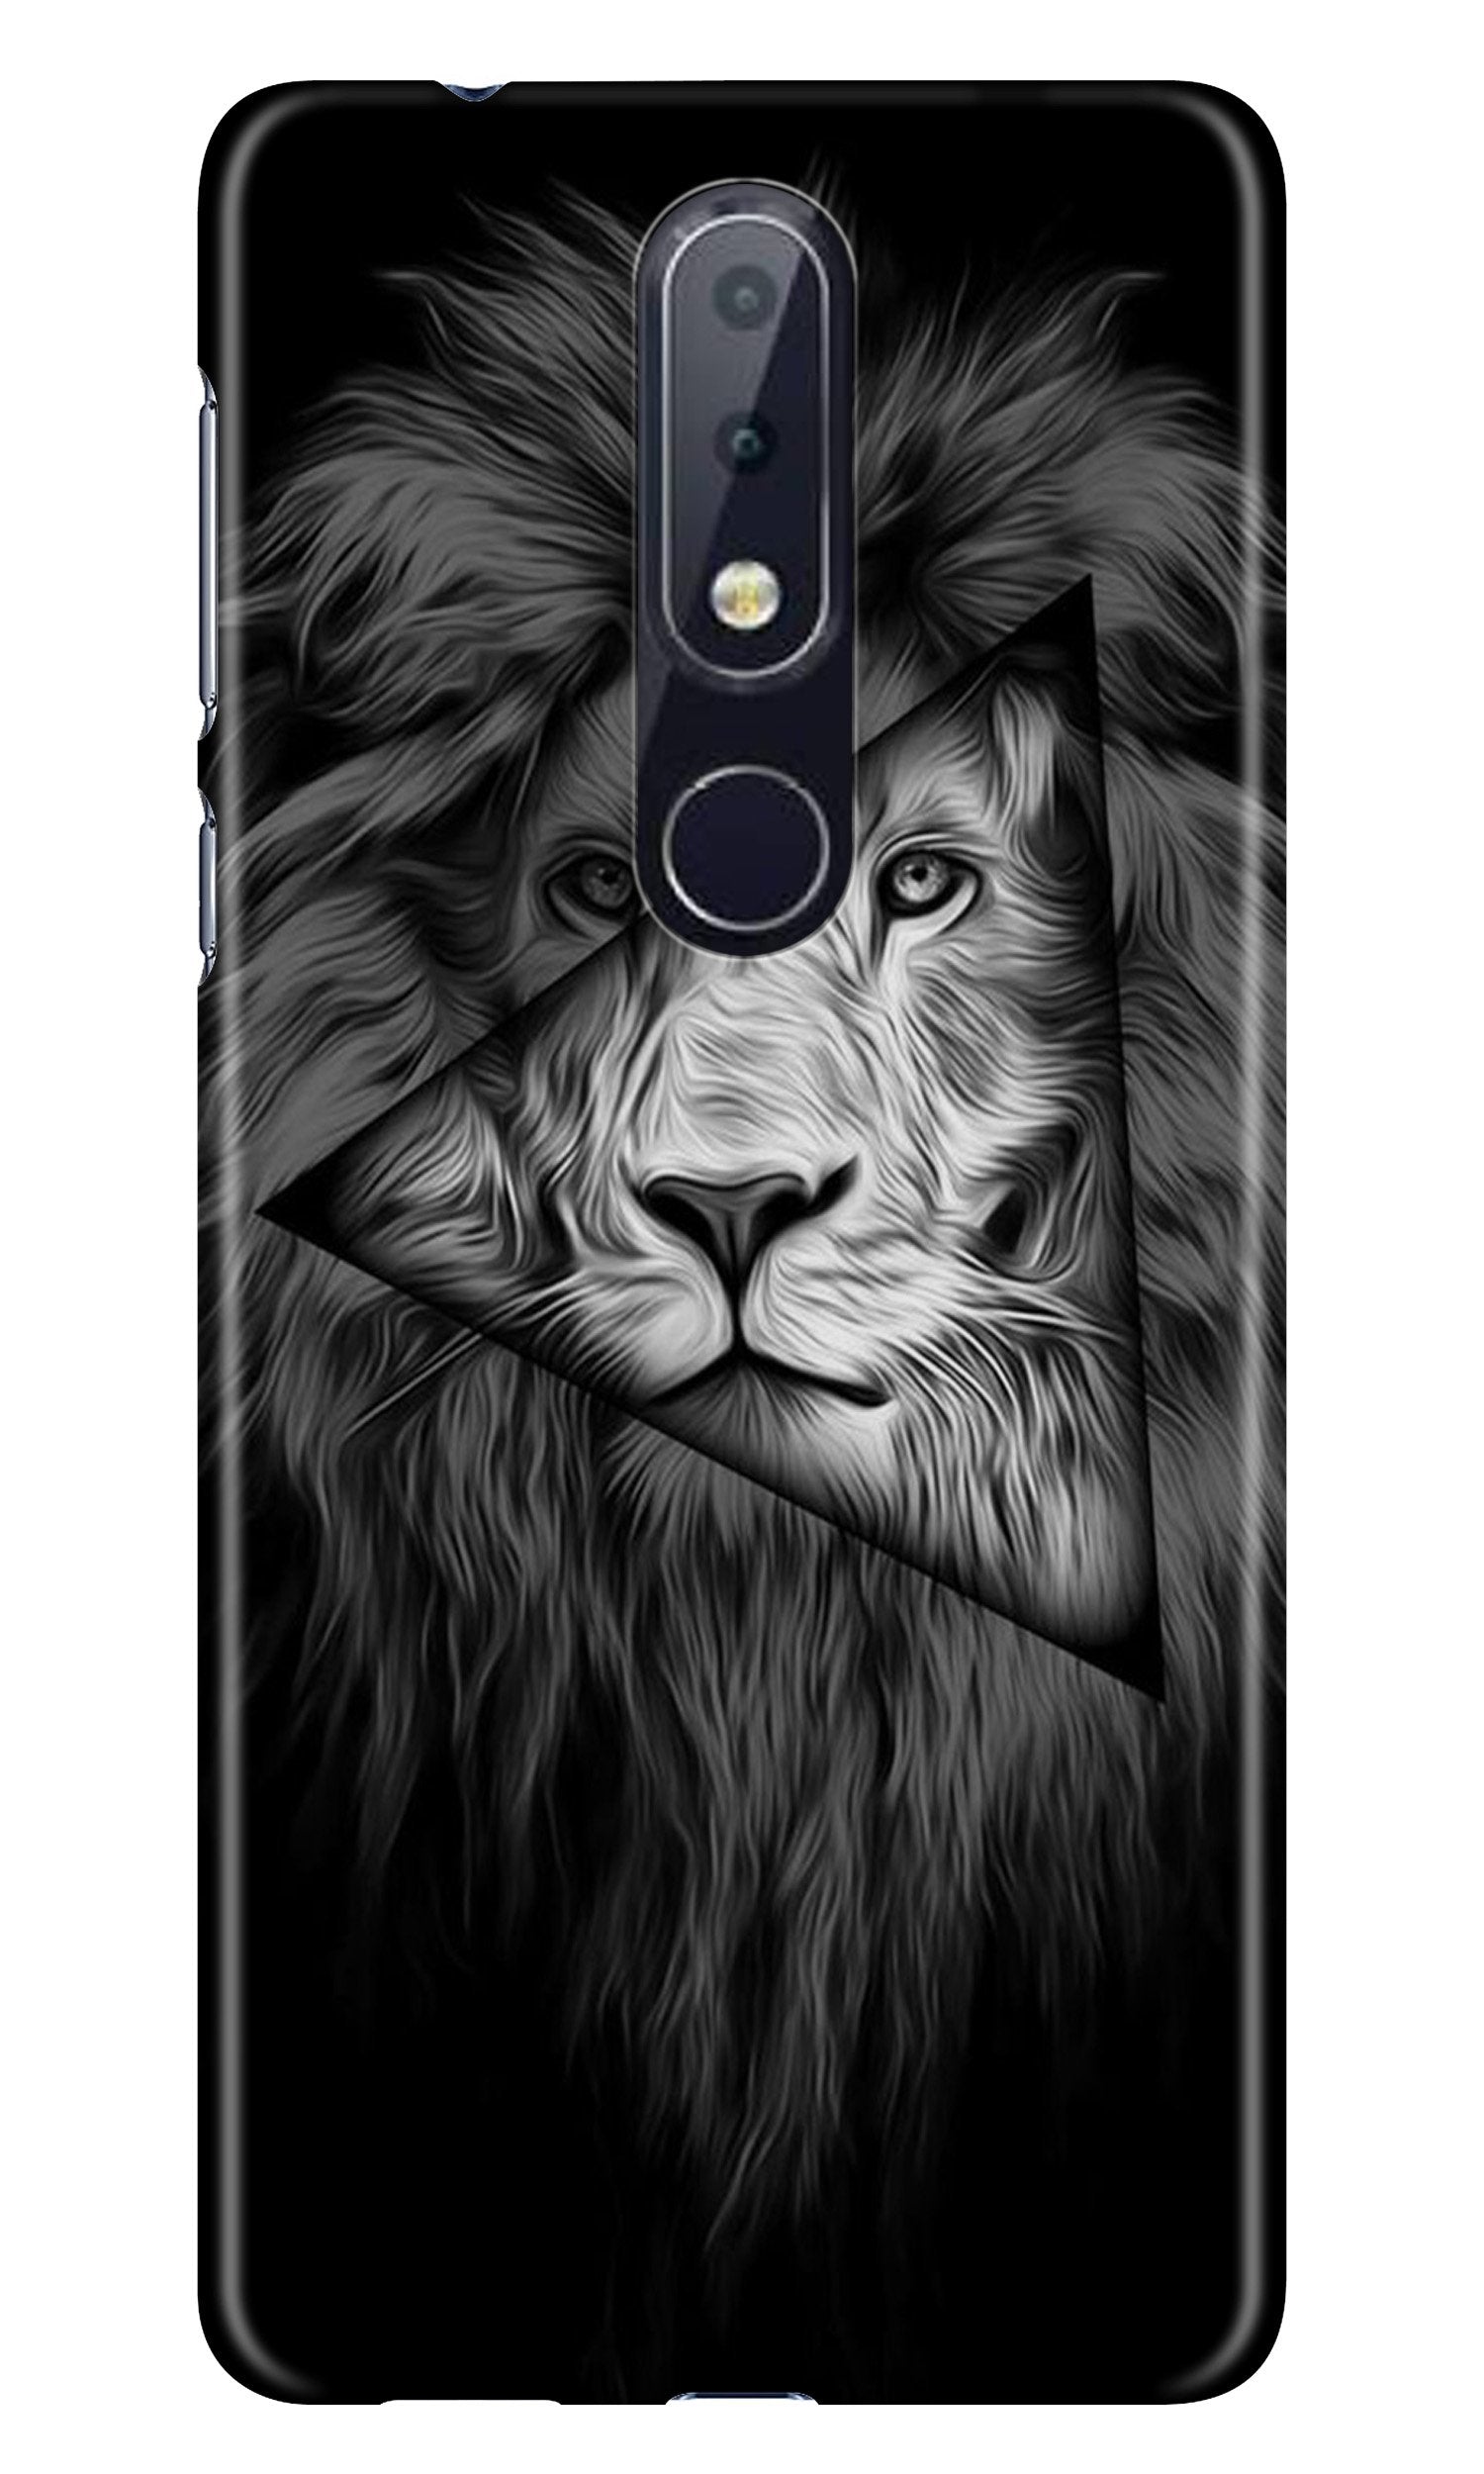 Lion Star Case for Nokia 7.1 (Design No. 226)